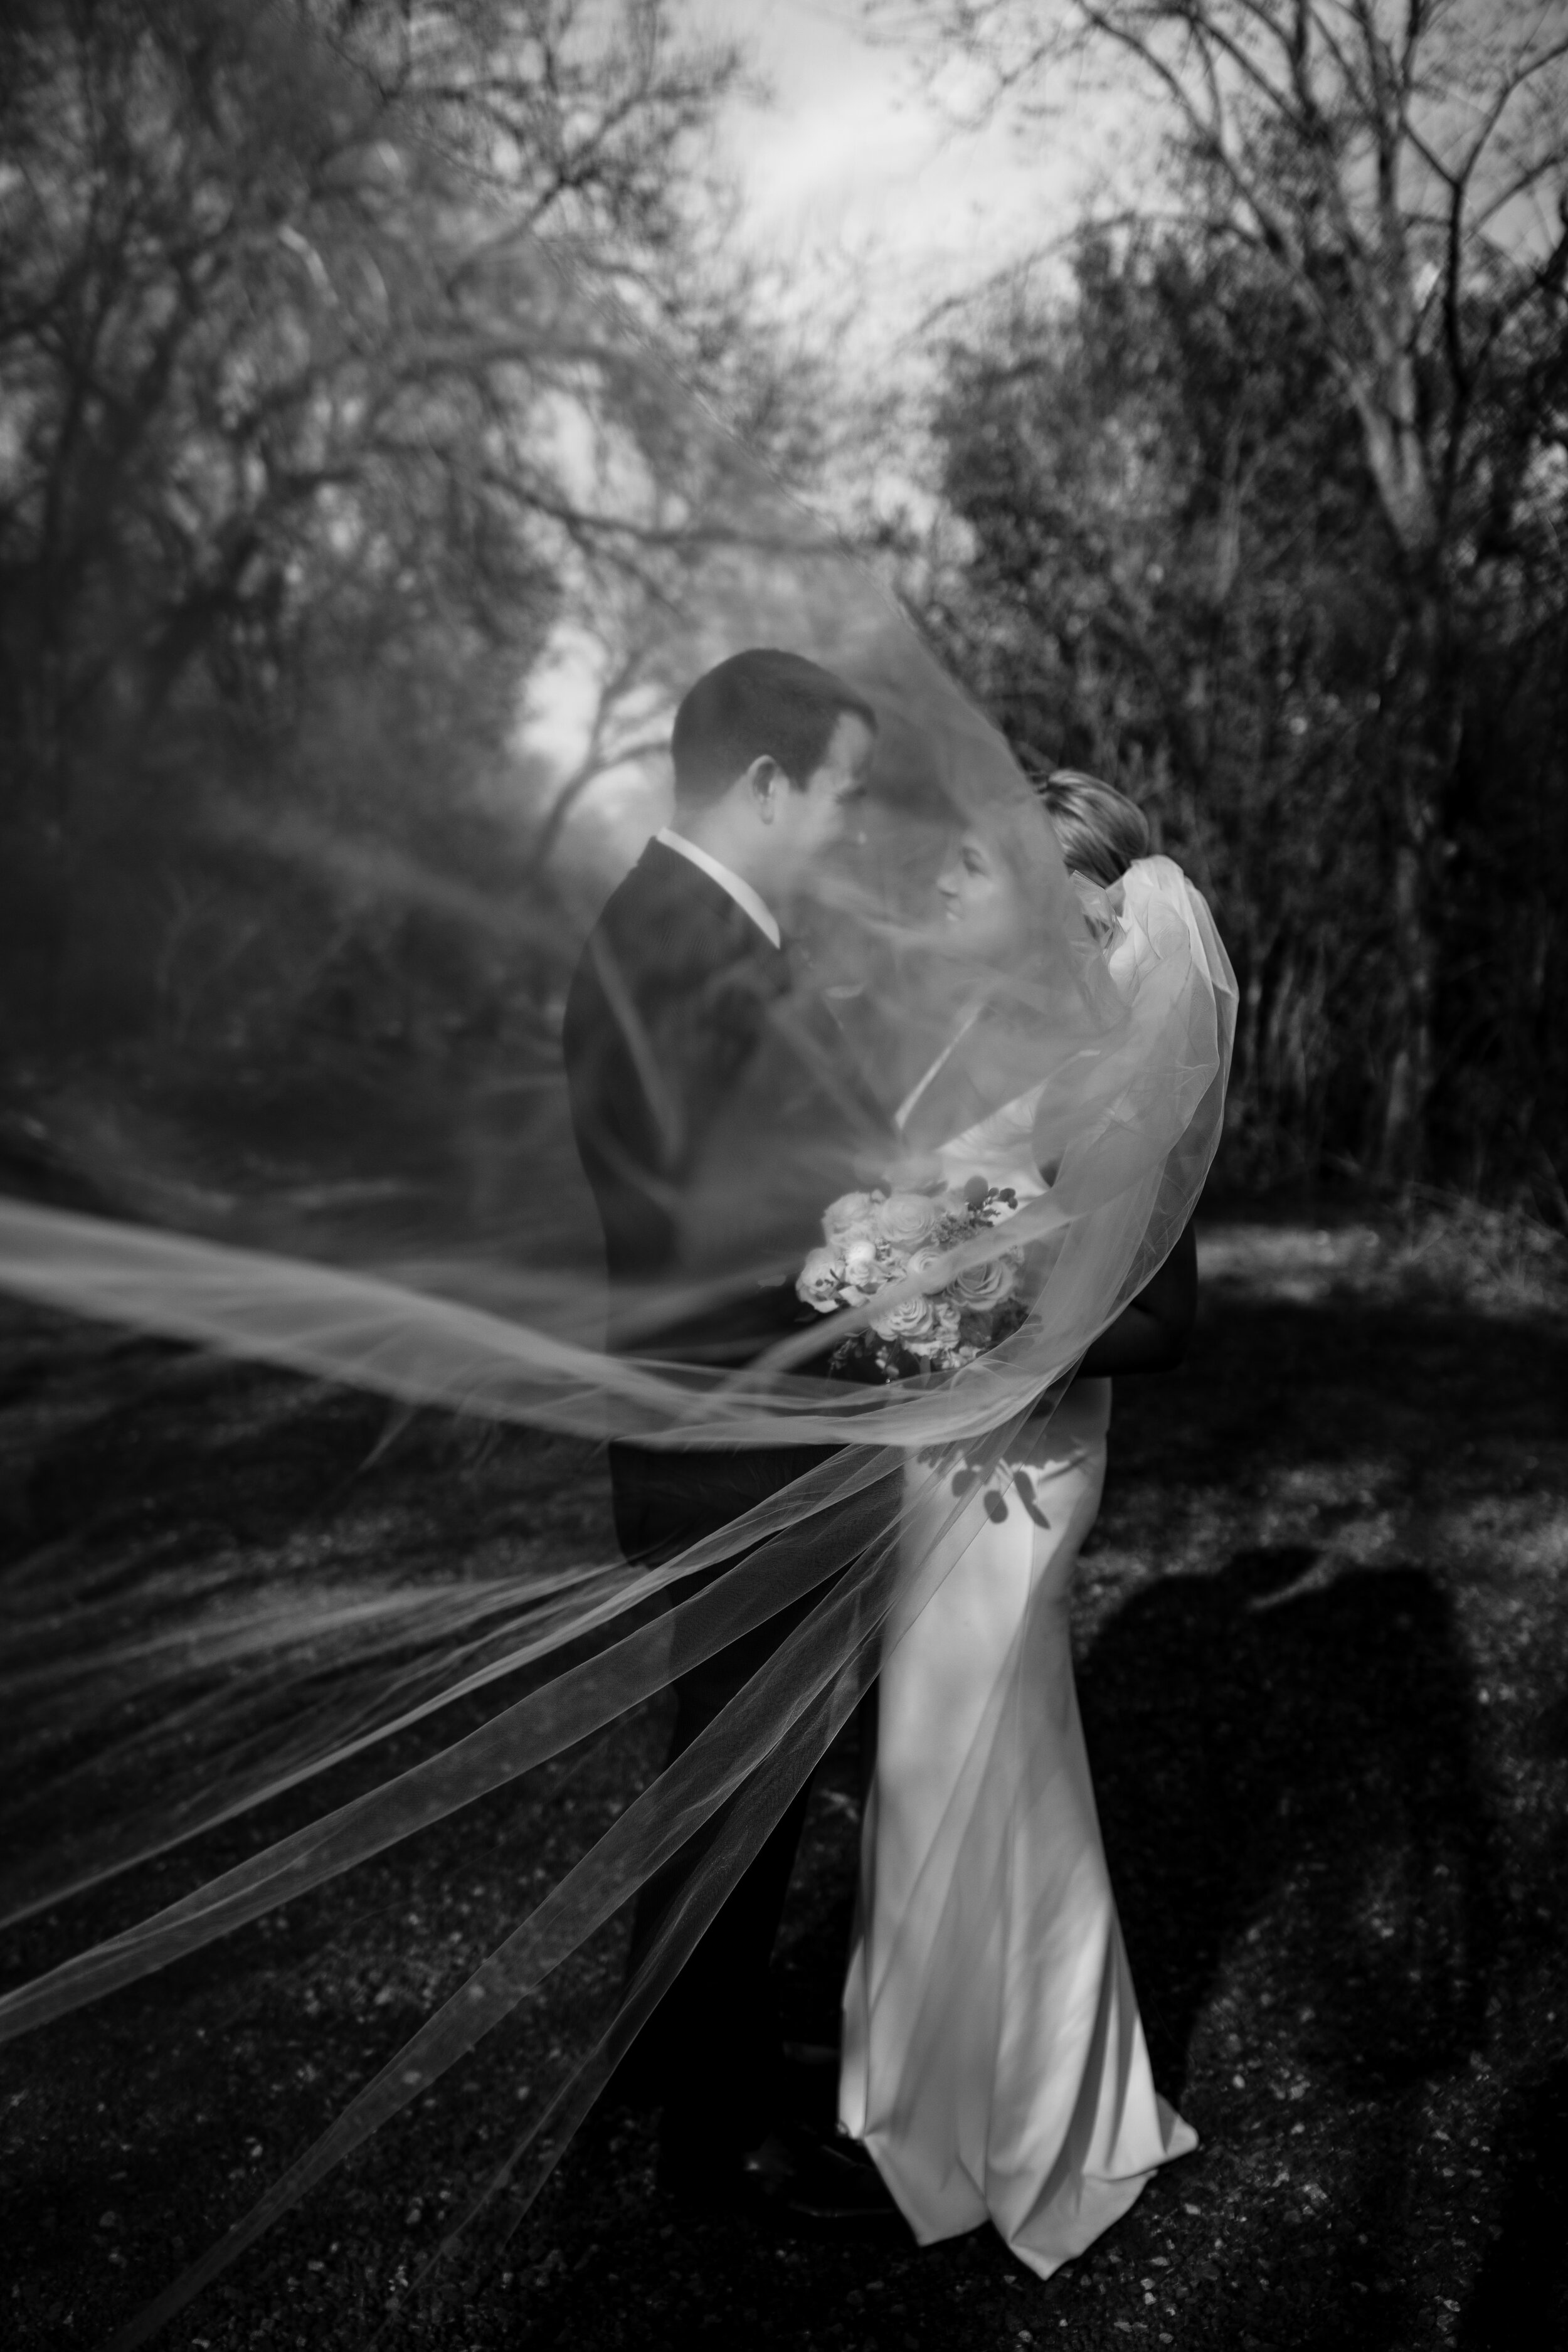 michigan-wedding-photographer-jessica-max-CoreysgettingMaryed-134.jpg